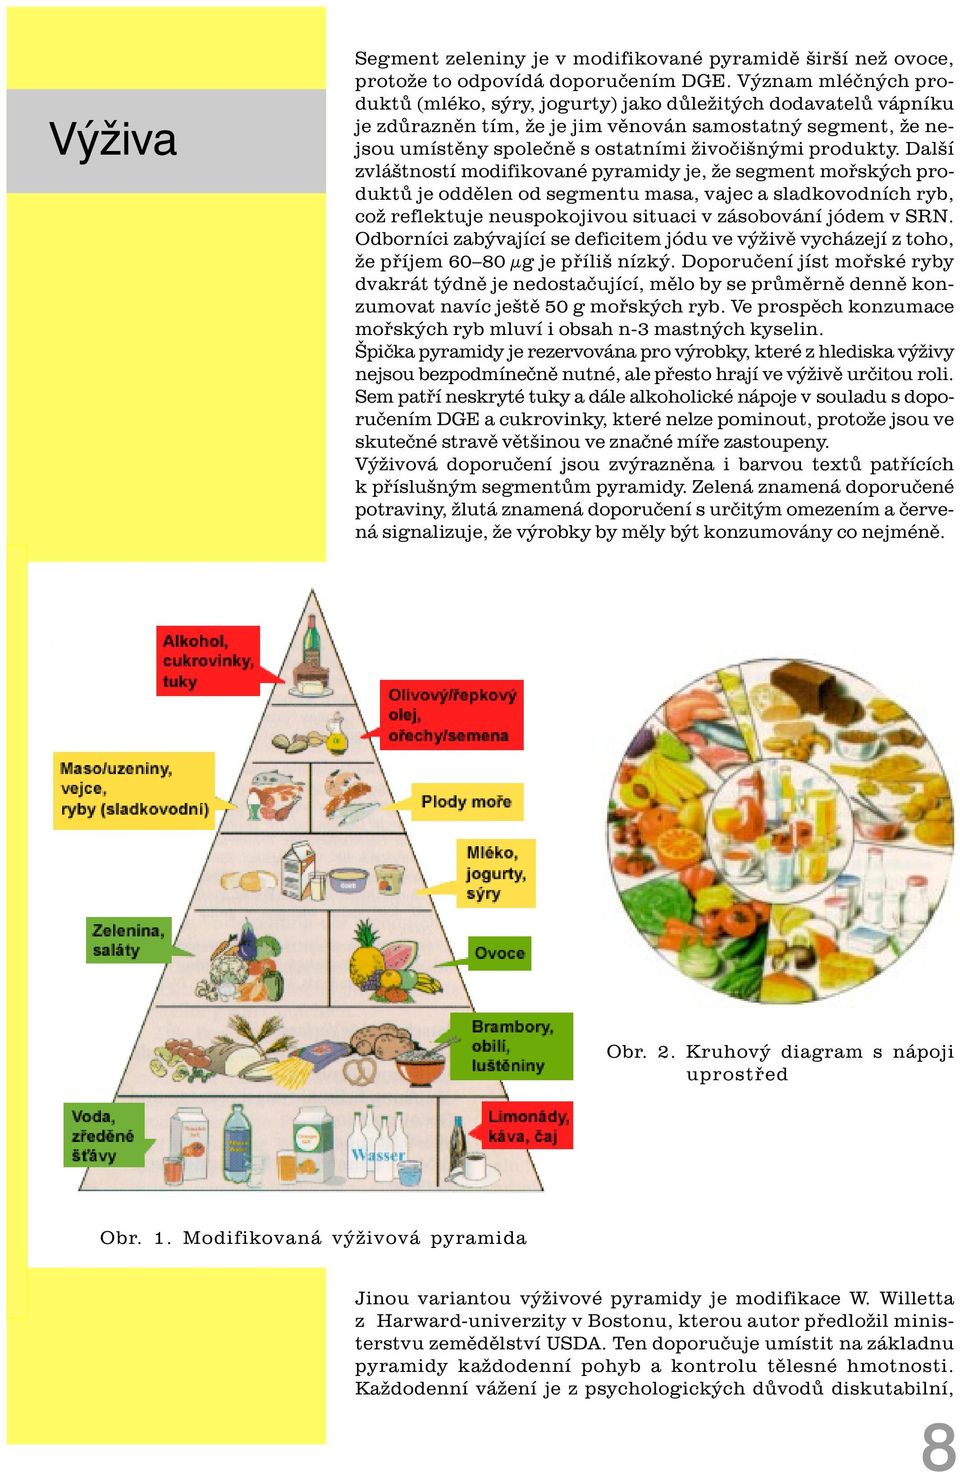 Další zvláštností modifikované pyramidy je, že segment moøských produktù je oddìlen od segmentu masa, vajec a sladkovodních ryb, což reflektuje neuspokojivou situaci v zásobování jódem v SRN.